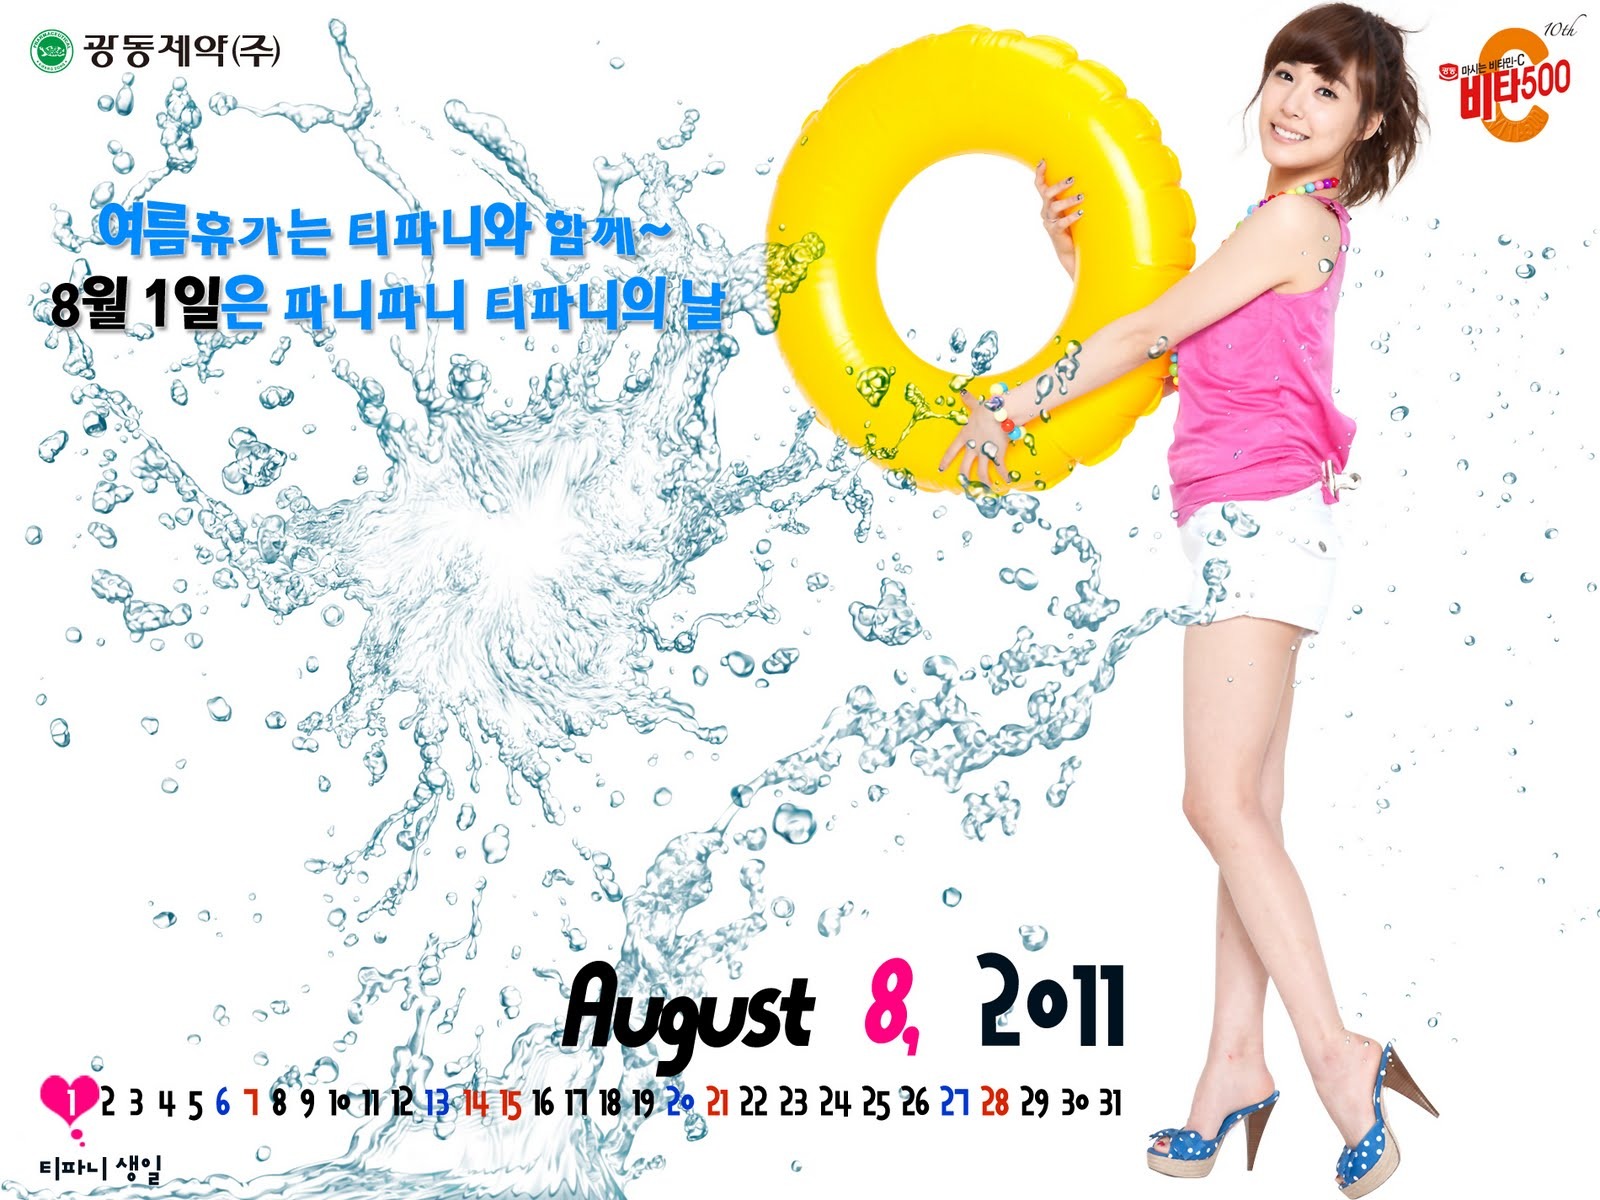 August 2011 calendar wallpaper (2) #17 - 1600x1200